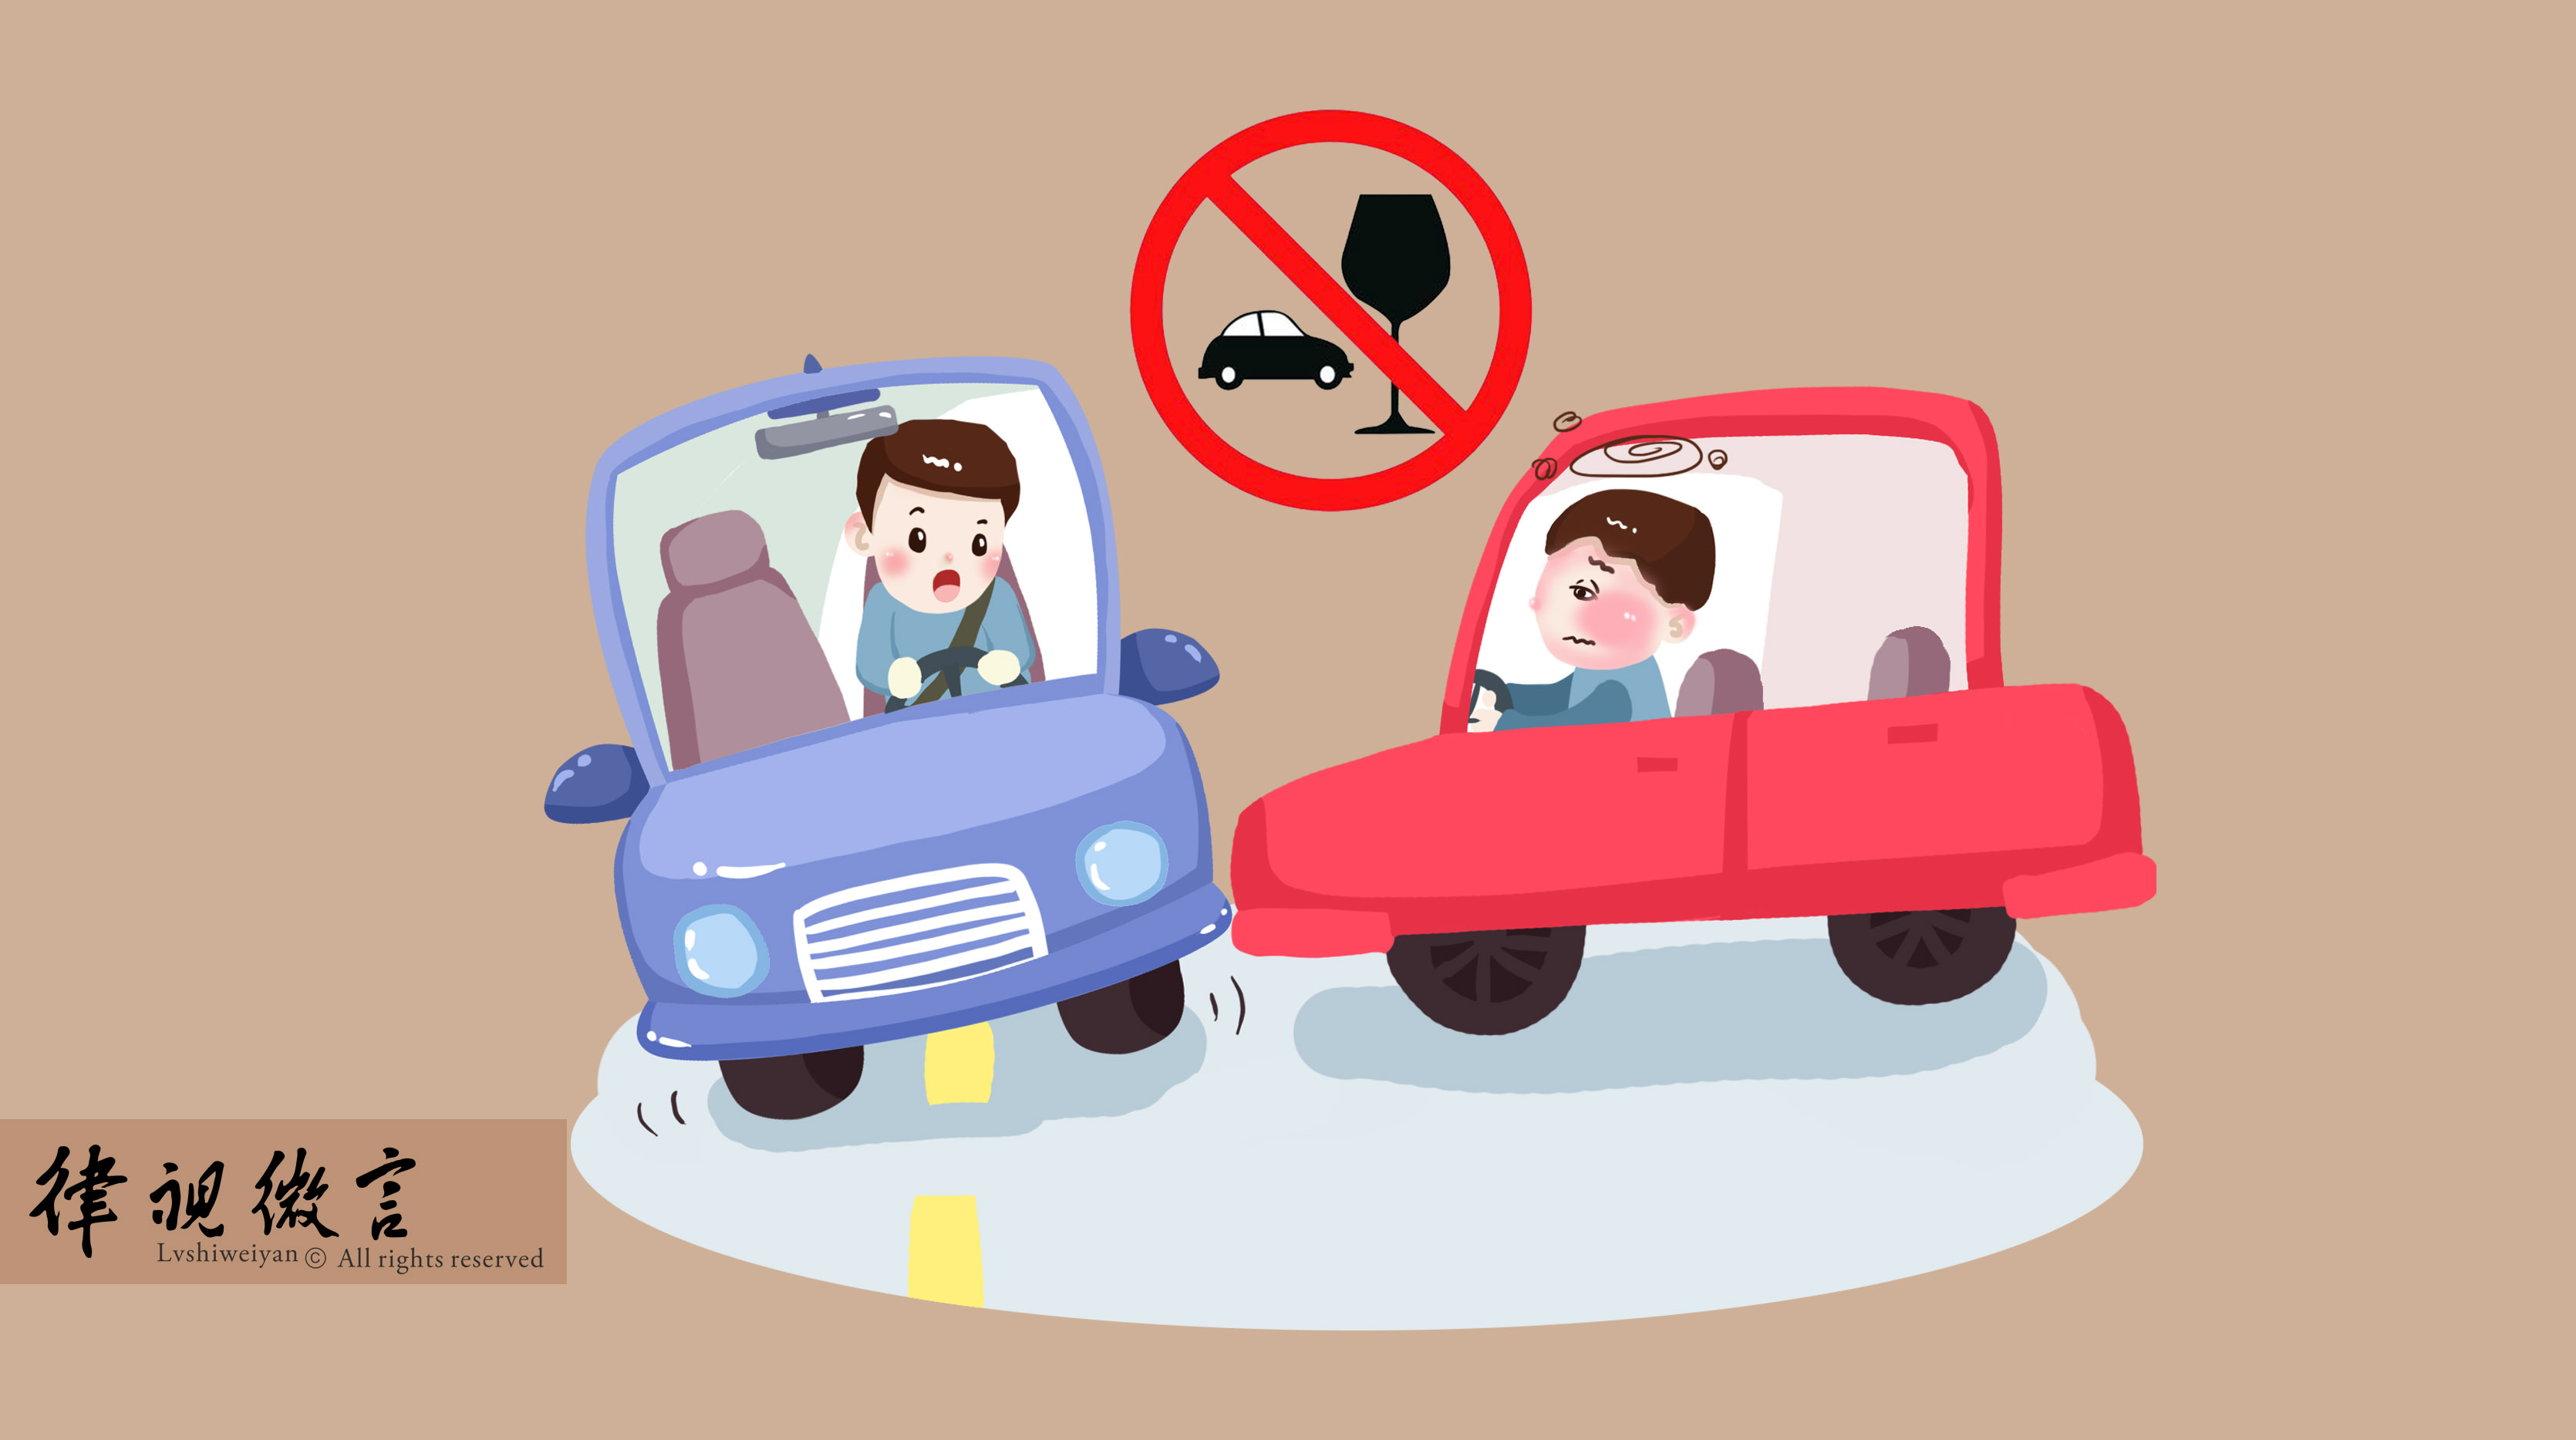 构成交通肇事罪的行为有哪些,什么样的行为才算是危险驾驶,又会受到